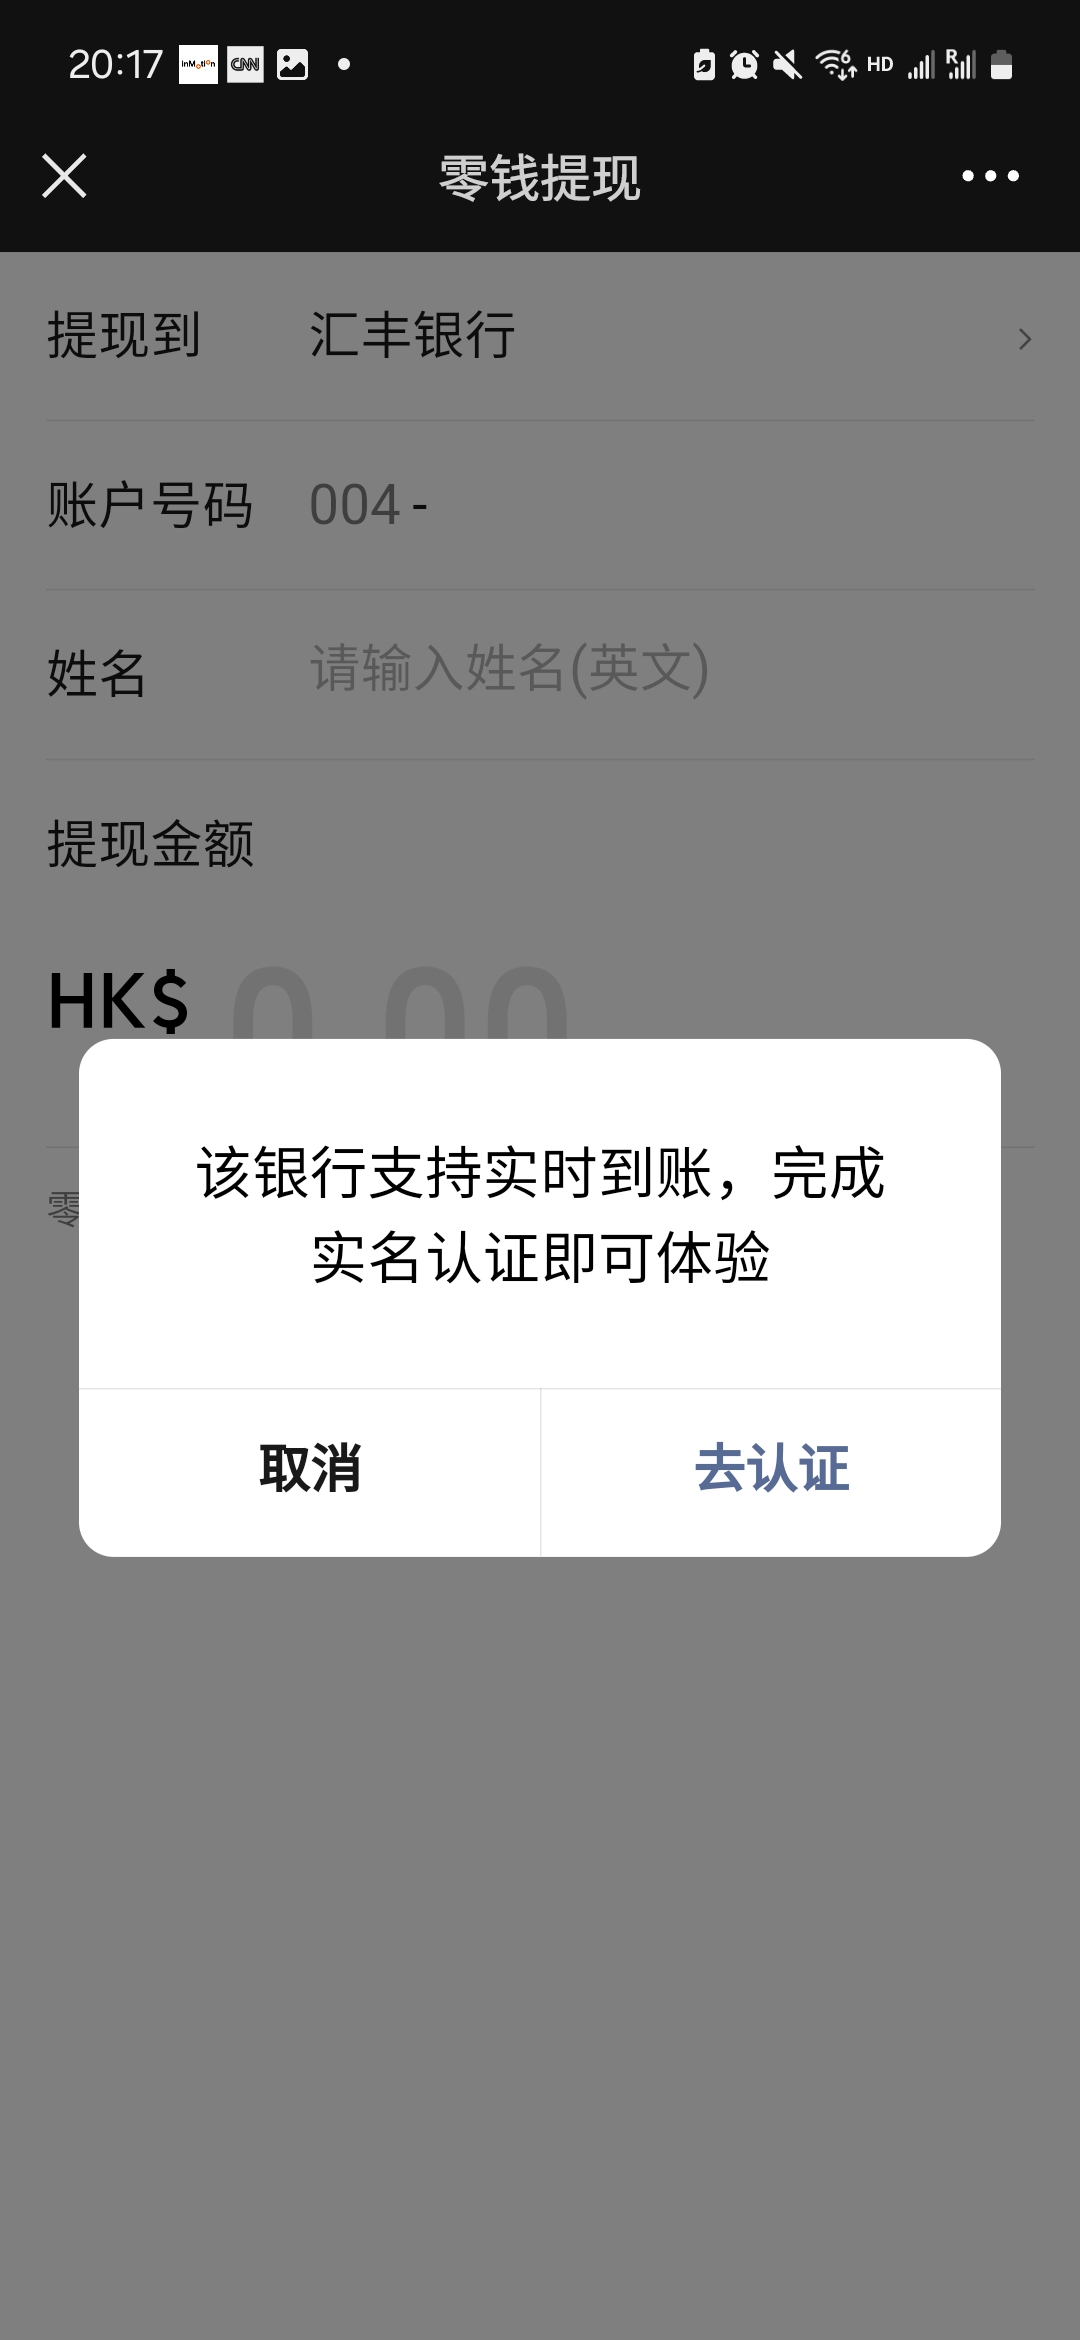 微信香港钱包千万别充值，无HKID认证提现不了，……